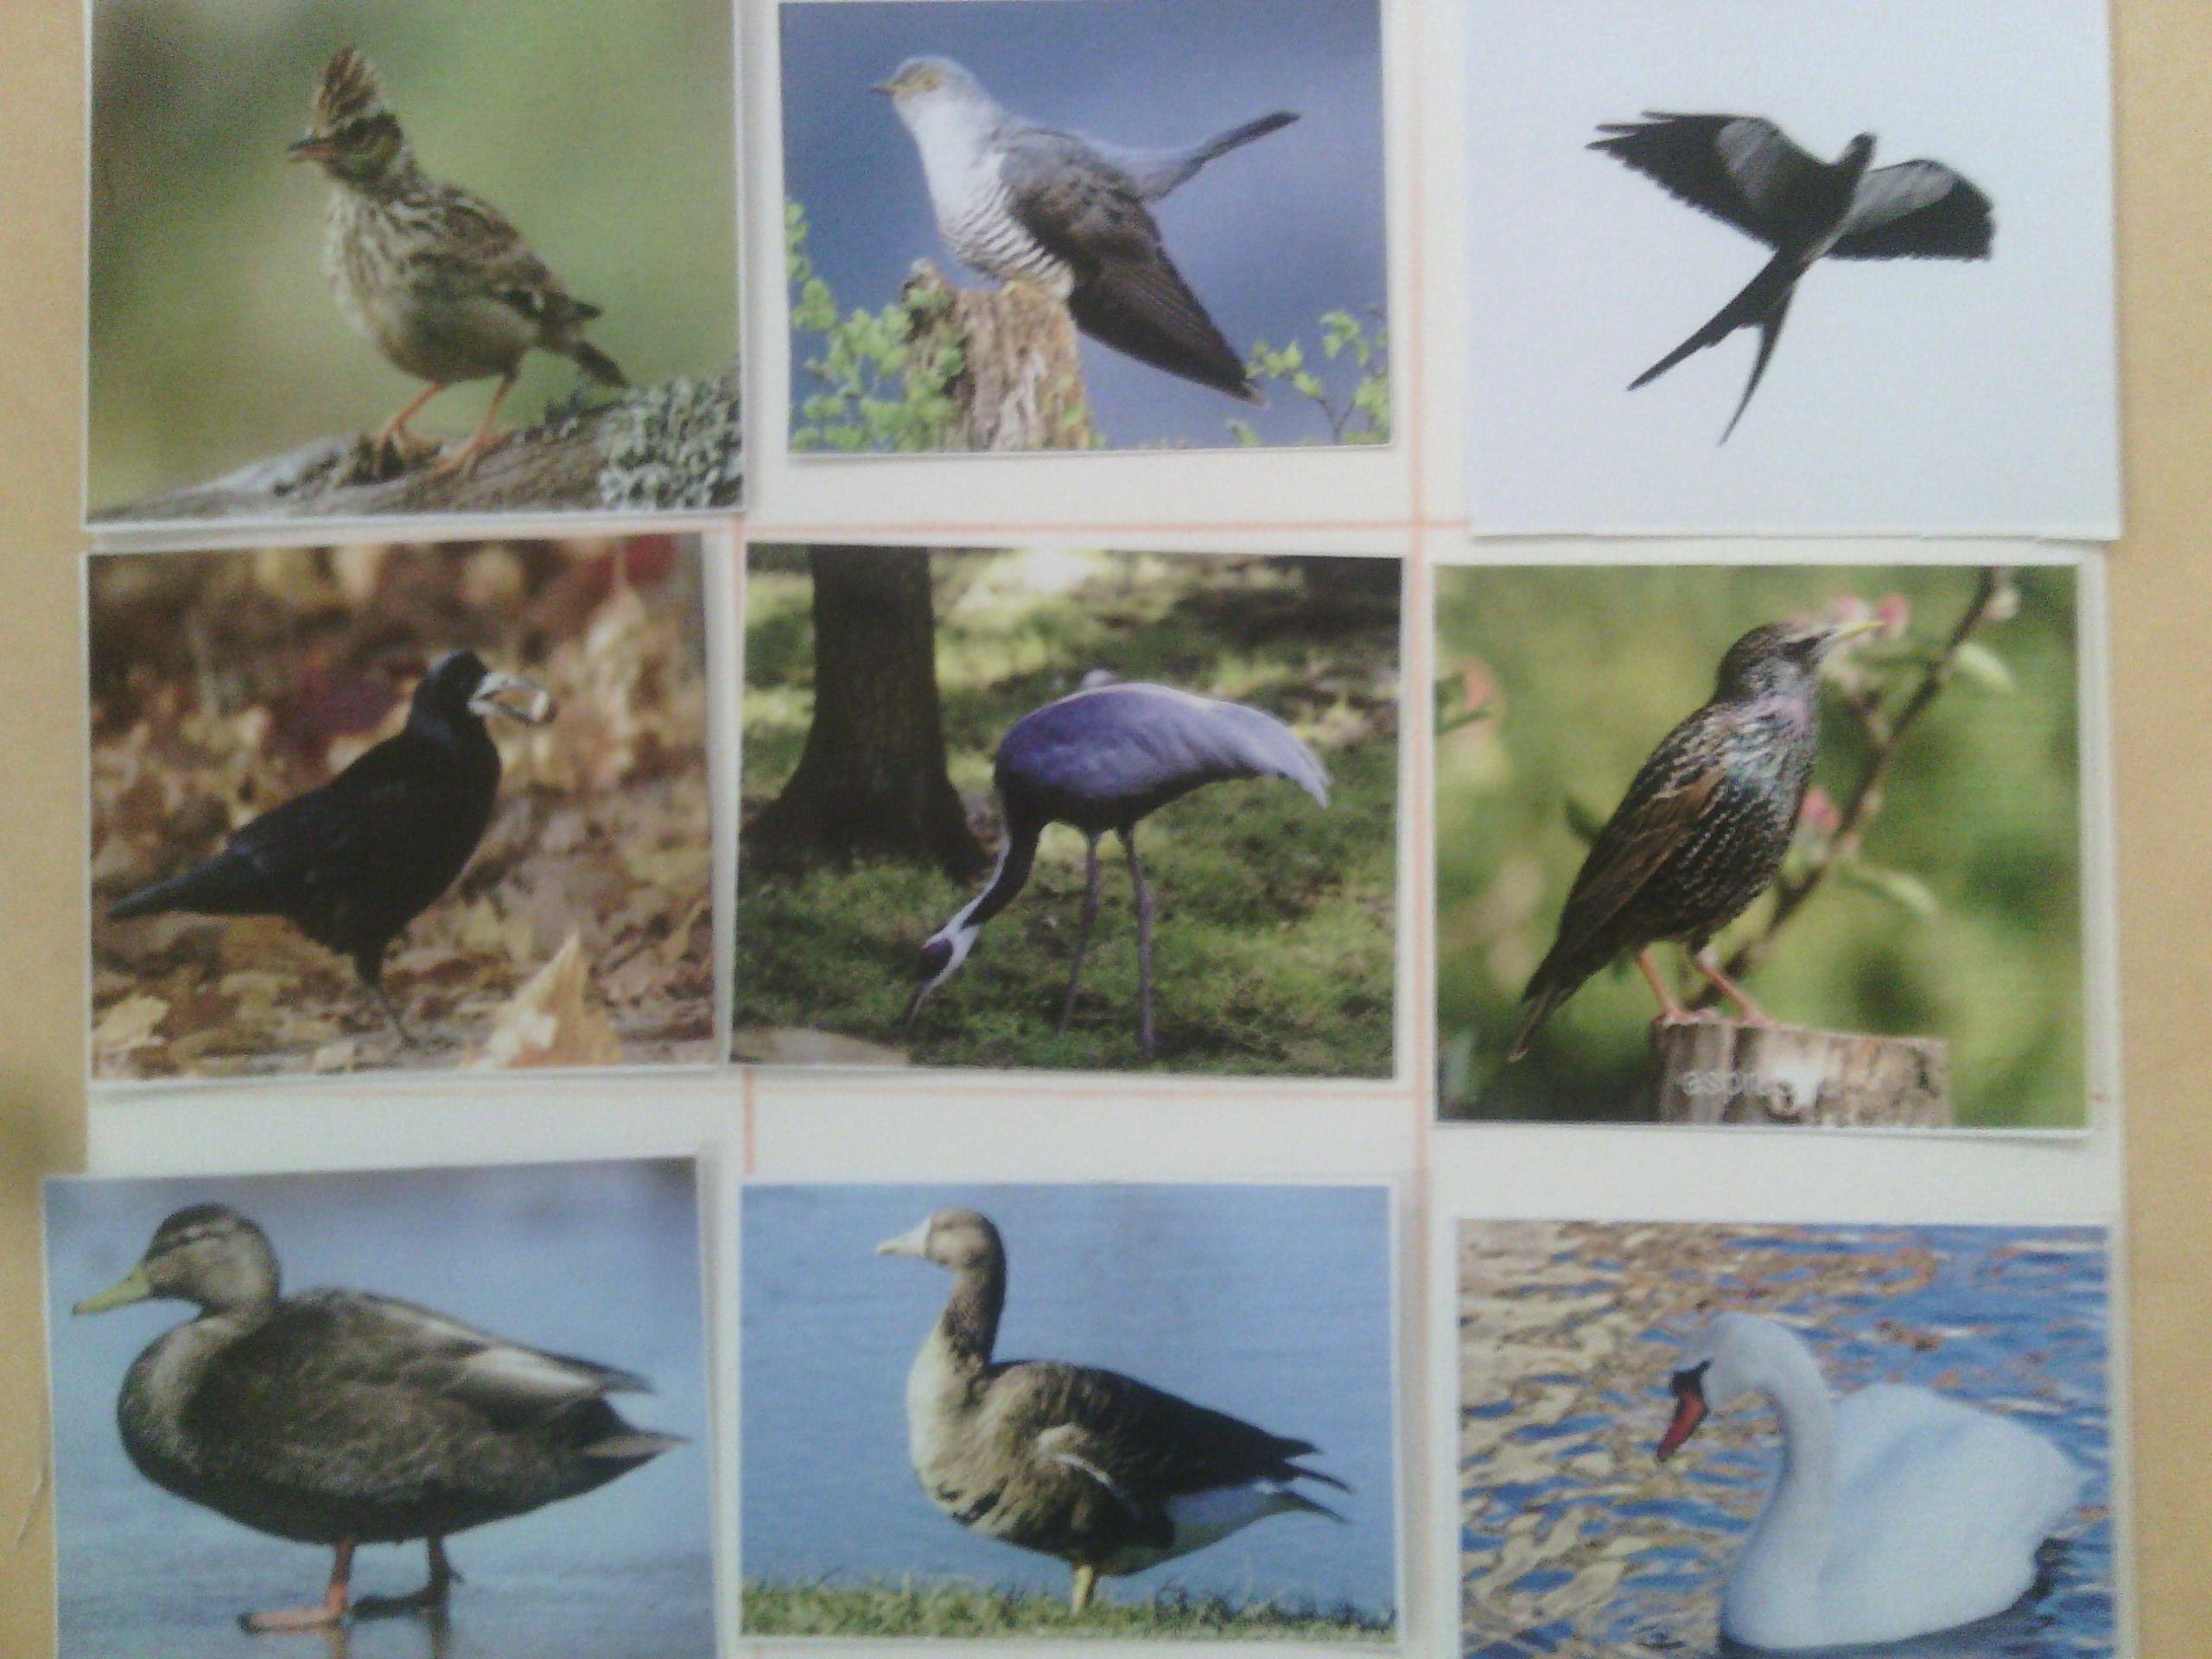 перелетные птицы удмуртии фото с названиями